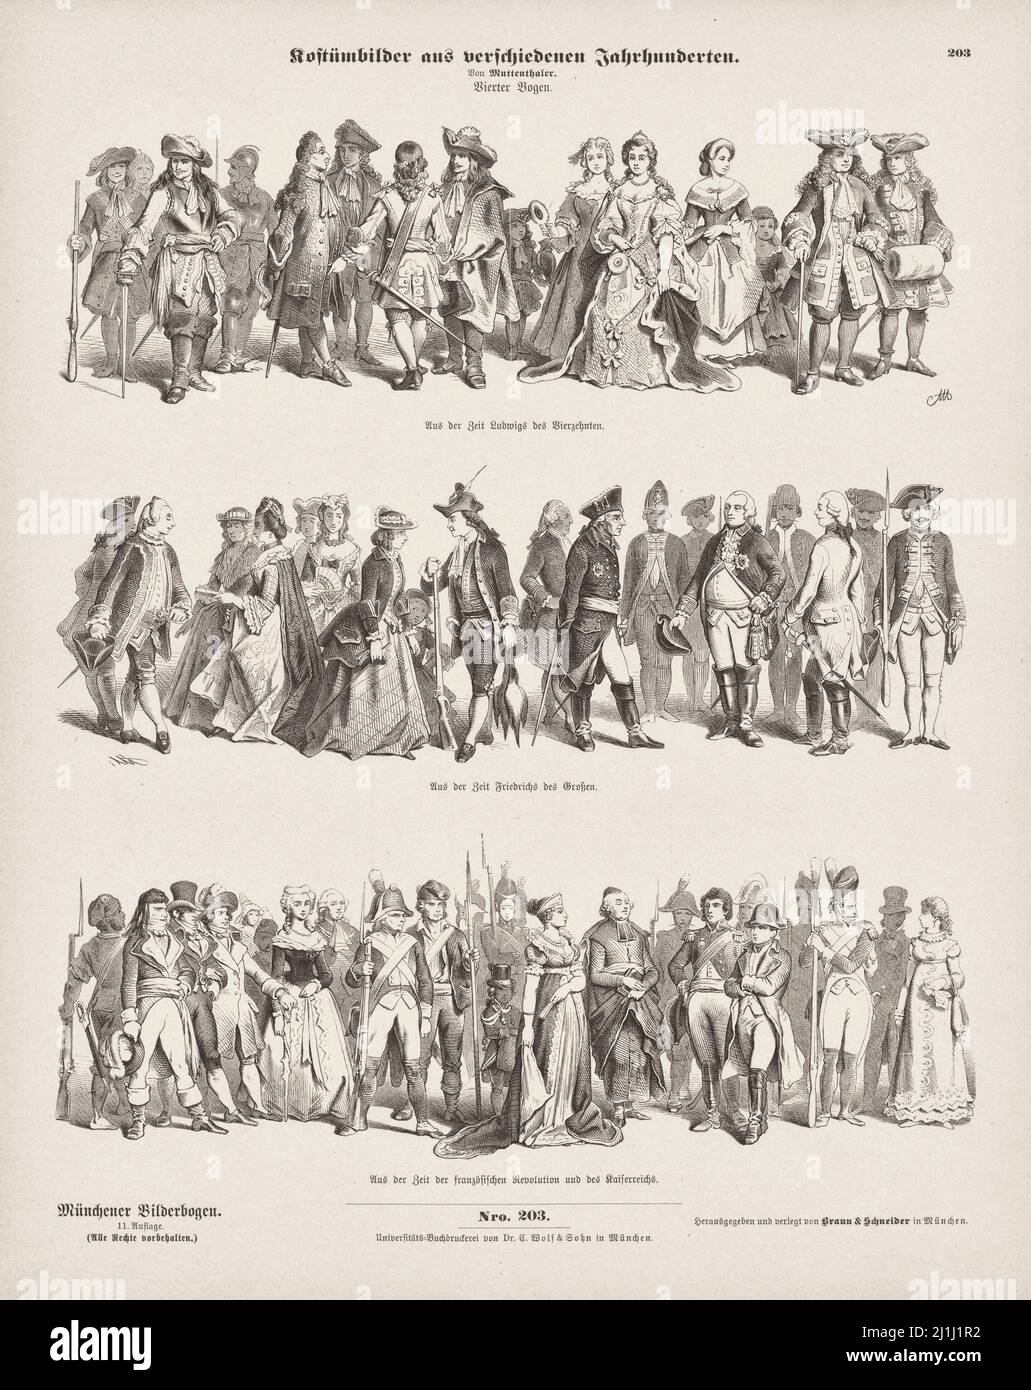 Litografía de imágenes de disfraces de diferentes siglos. 1856 Foto de stock